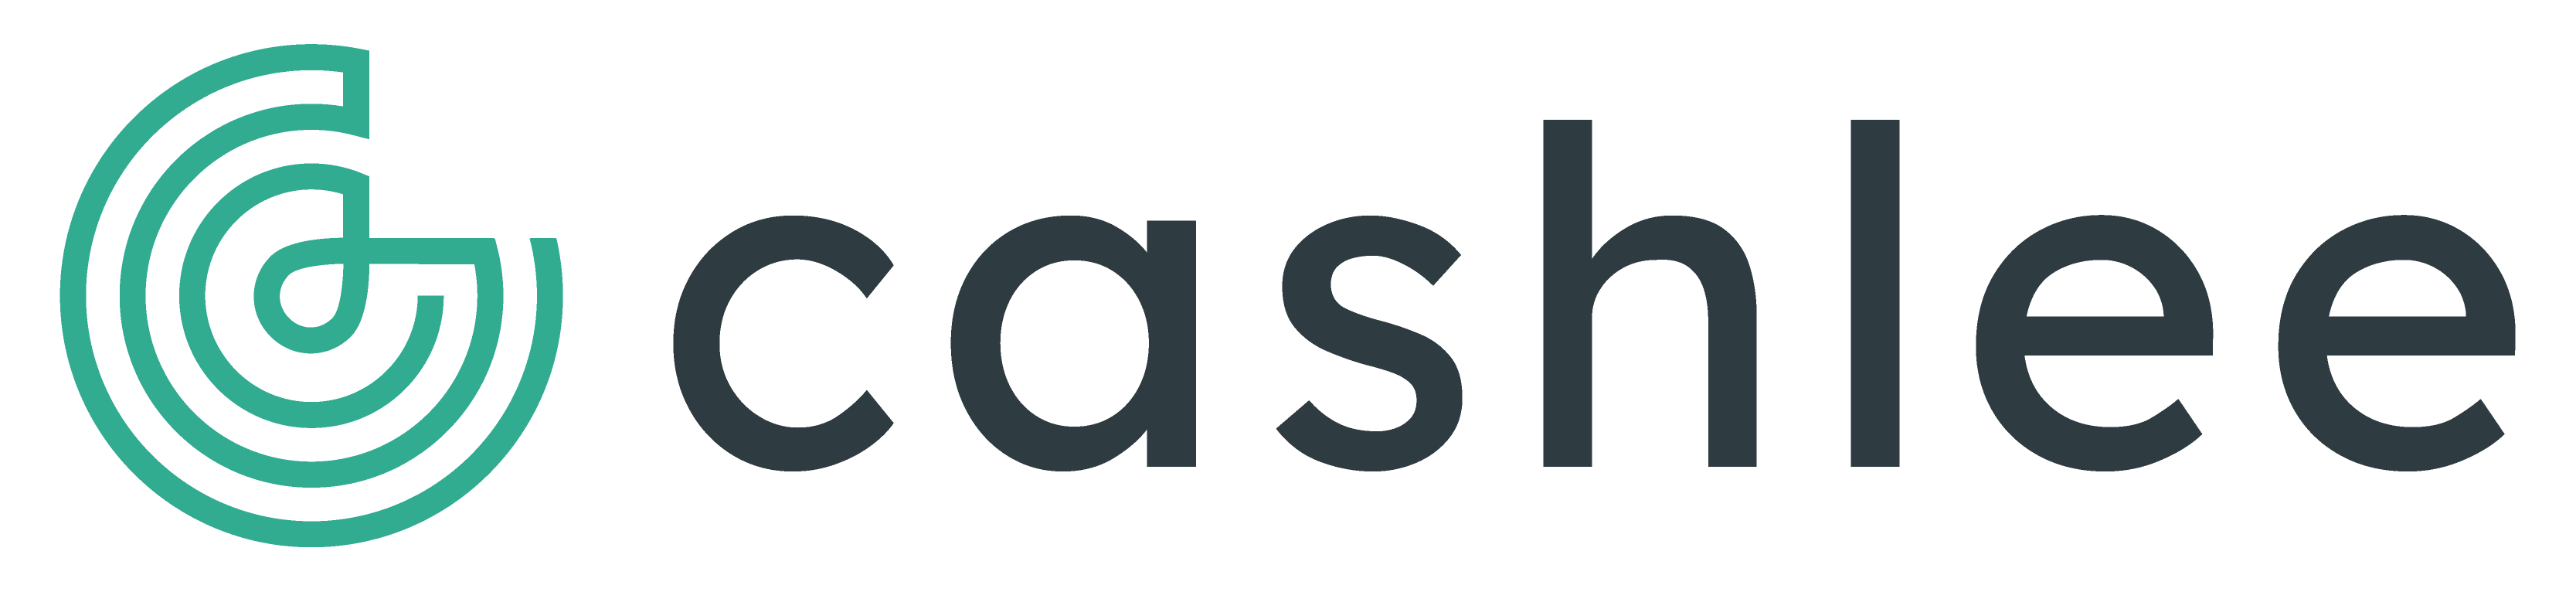 logo Cashlee